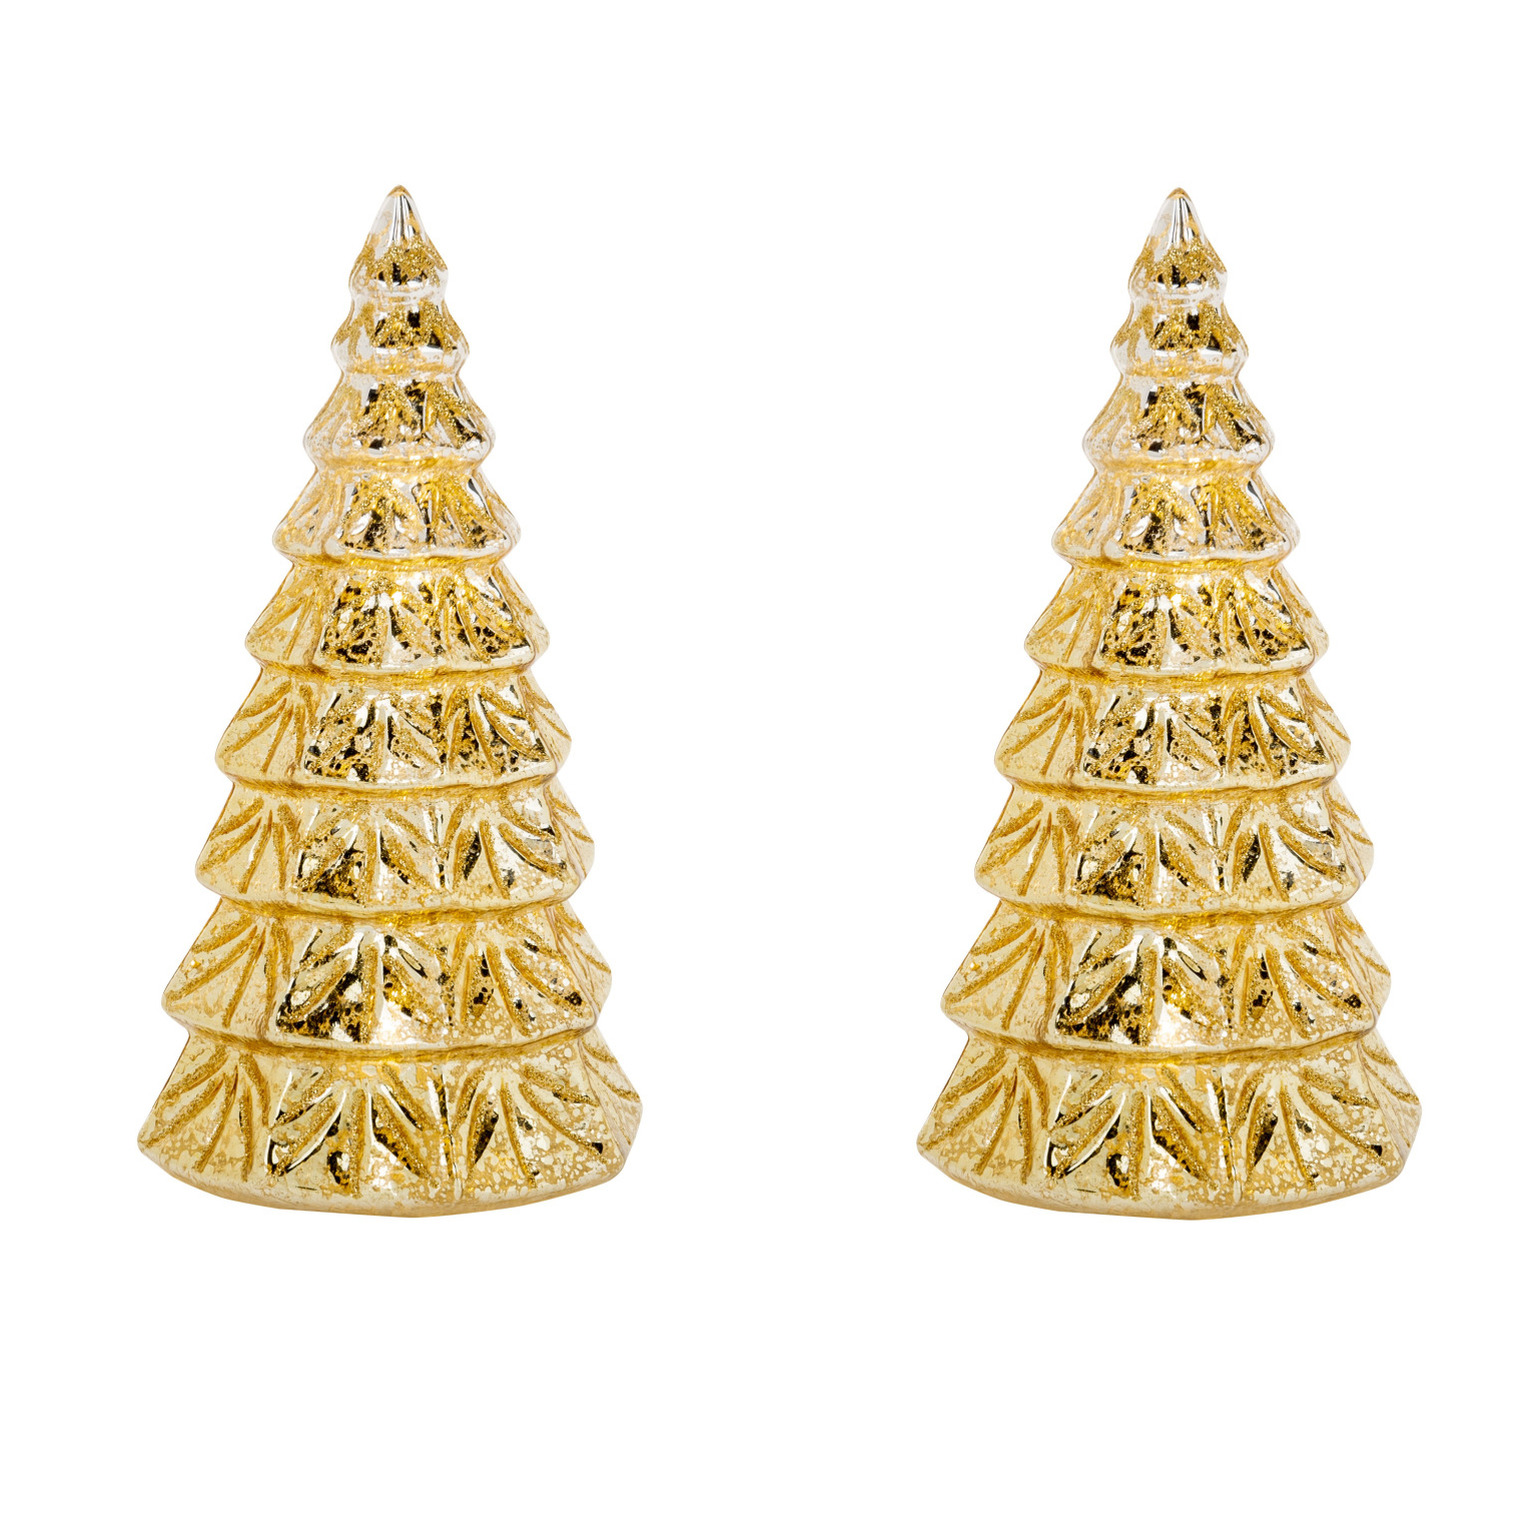 2x stuks led kaarsen kerstboom kaars goud D10 x H23 cm